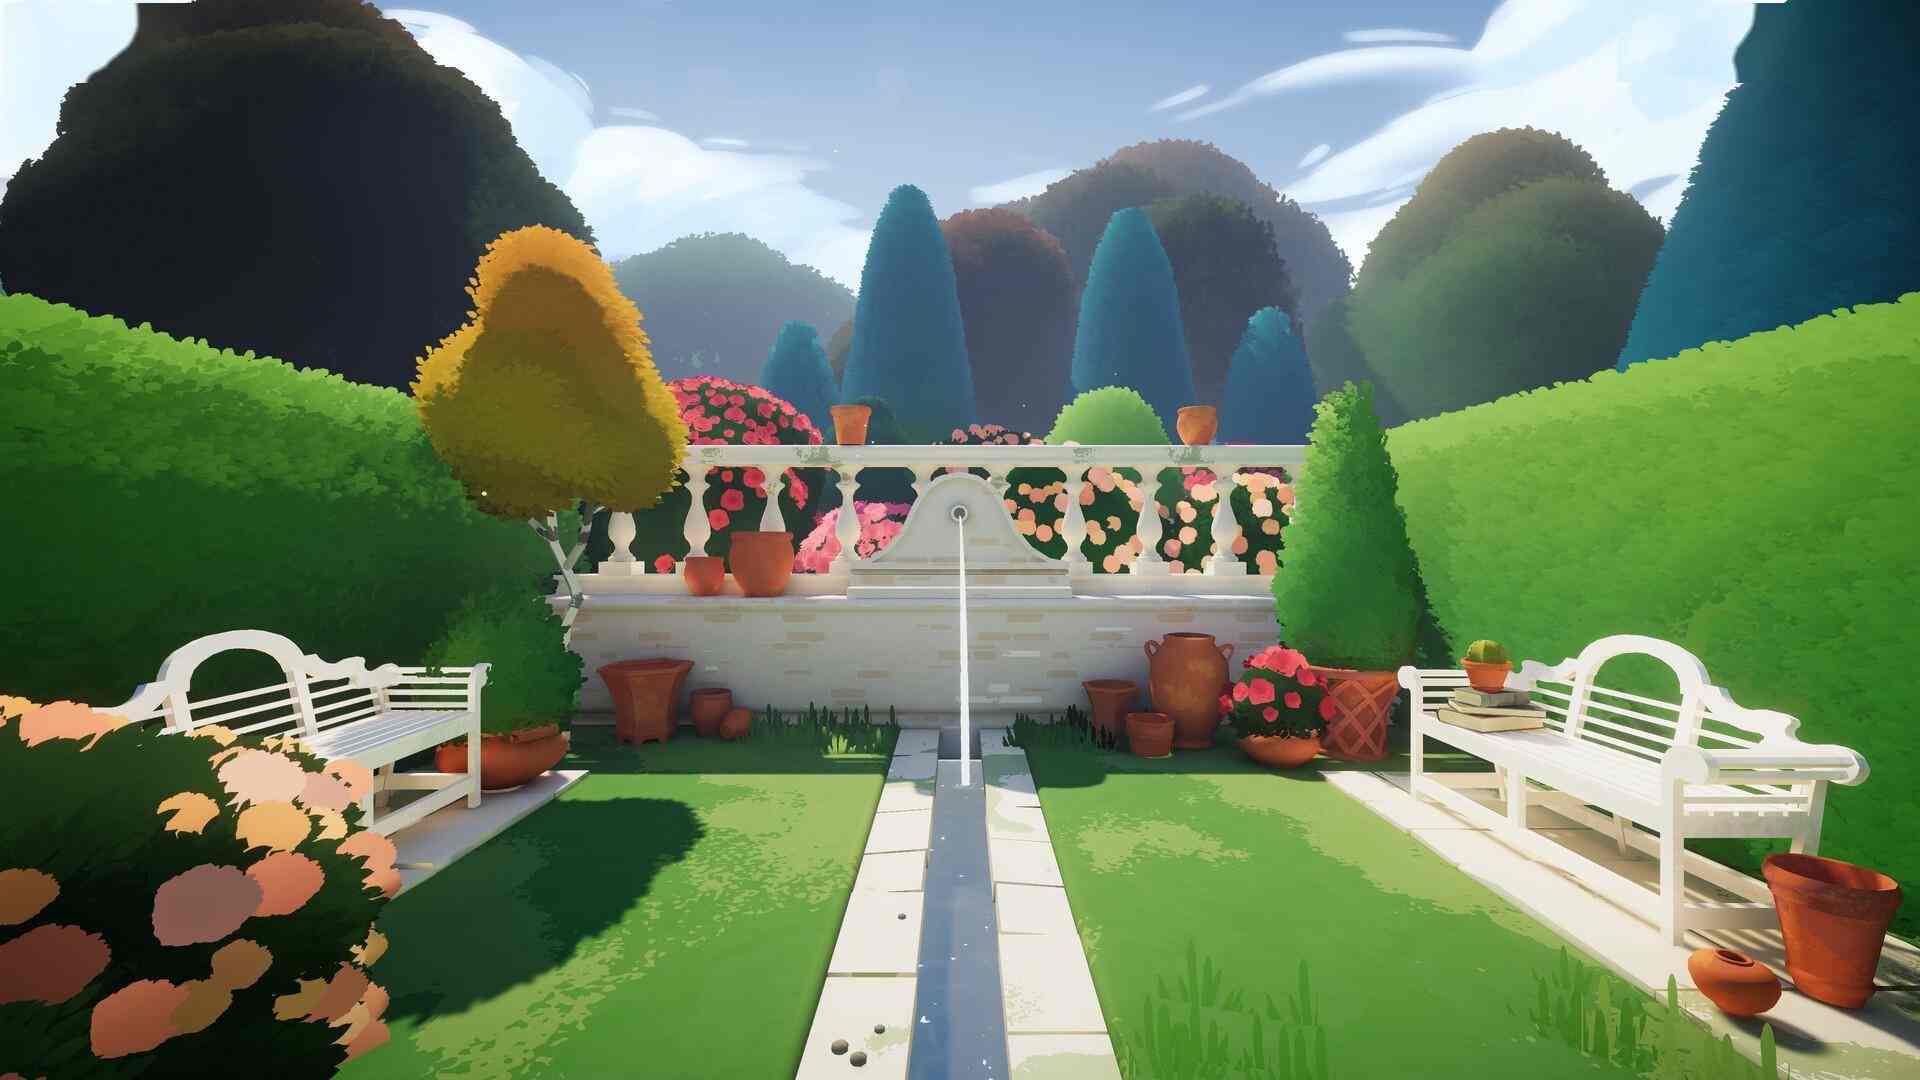 沉浸式模拟教育游戏《植物学庄园》现已在新品节推出试玩Demo